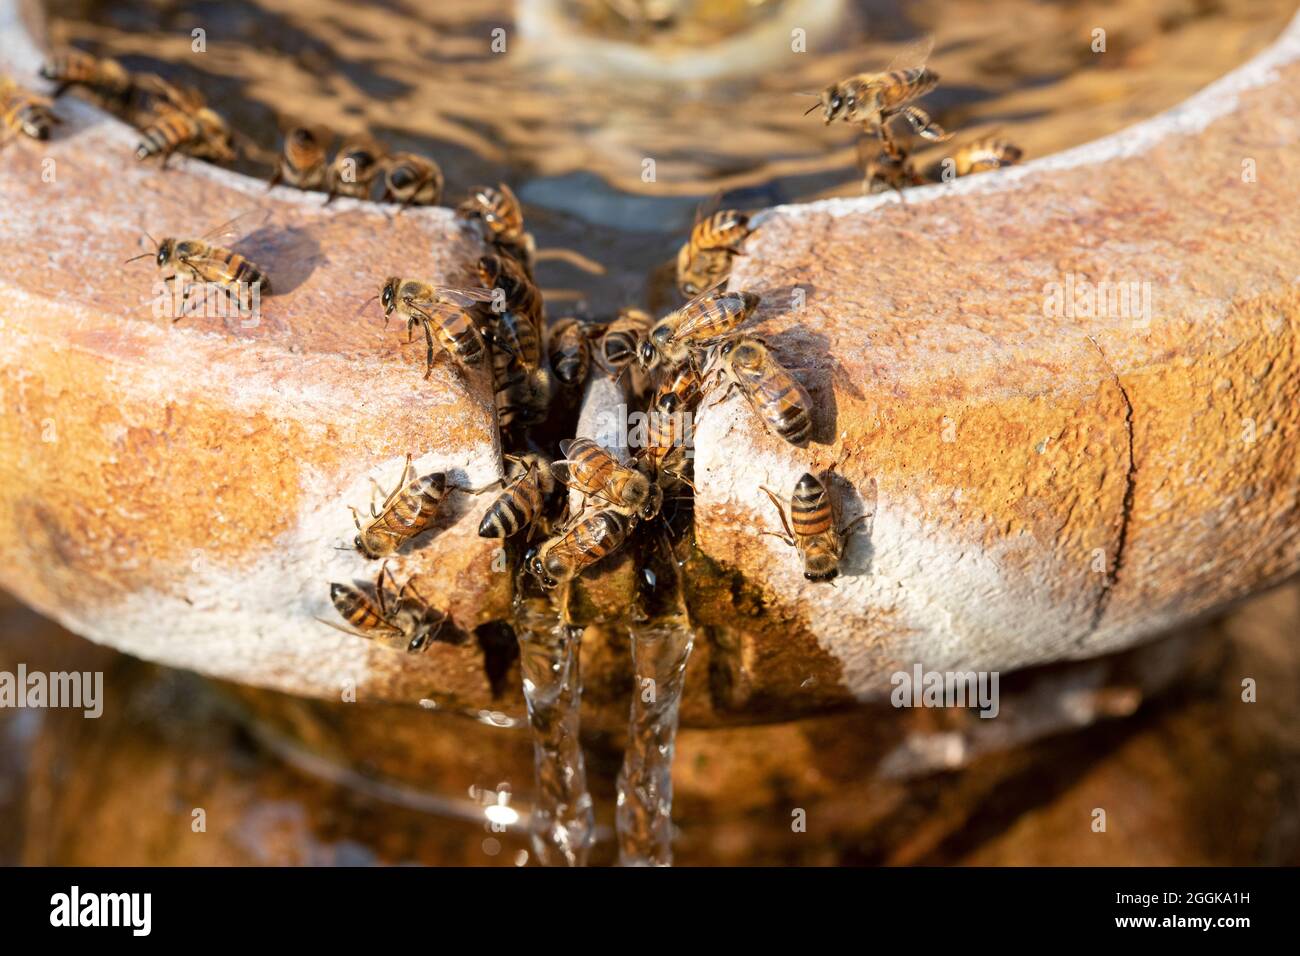 Les abeilles collectent l'eau d'une fontaine pour ramener à la ruche un jour chaud d'été, dans le sud de l'Arizona, aux États-Unis Banque D'Images